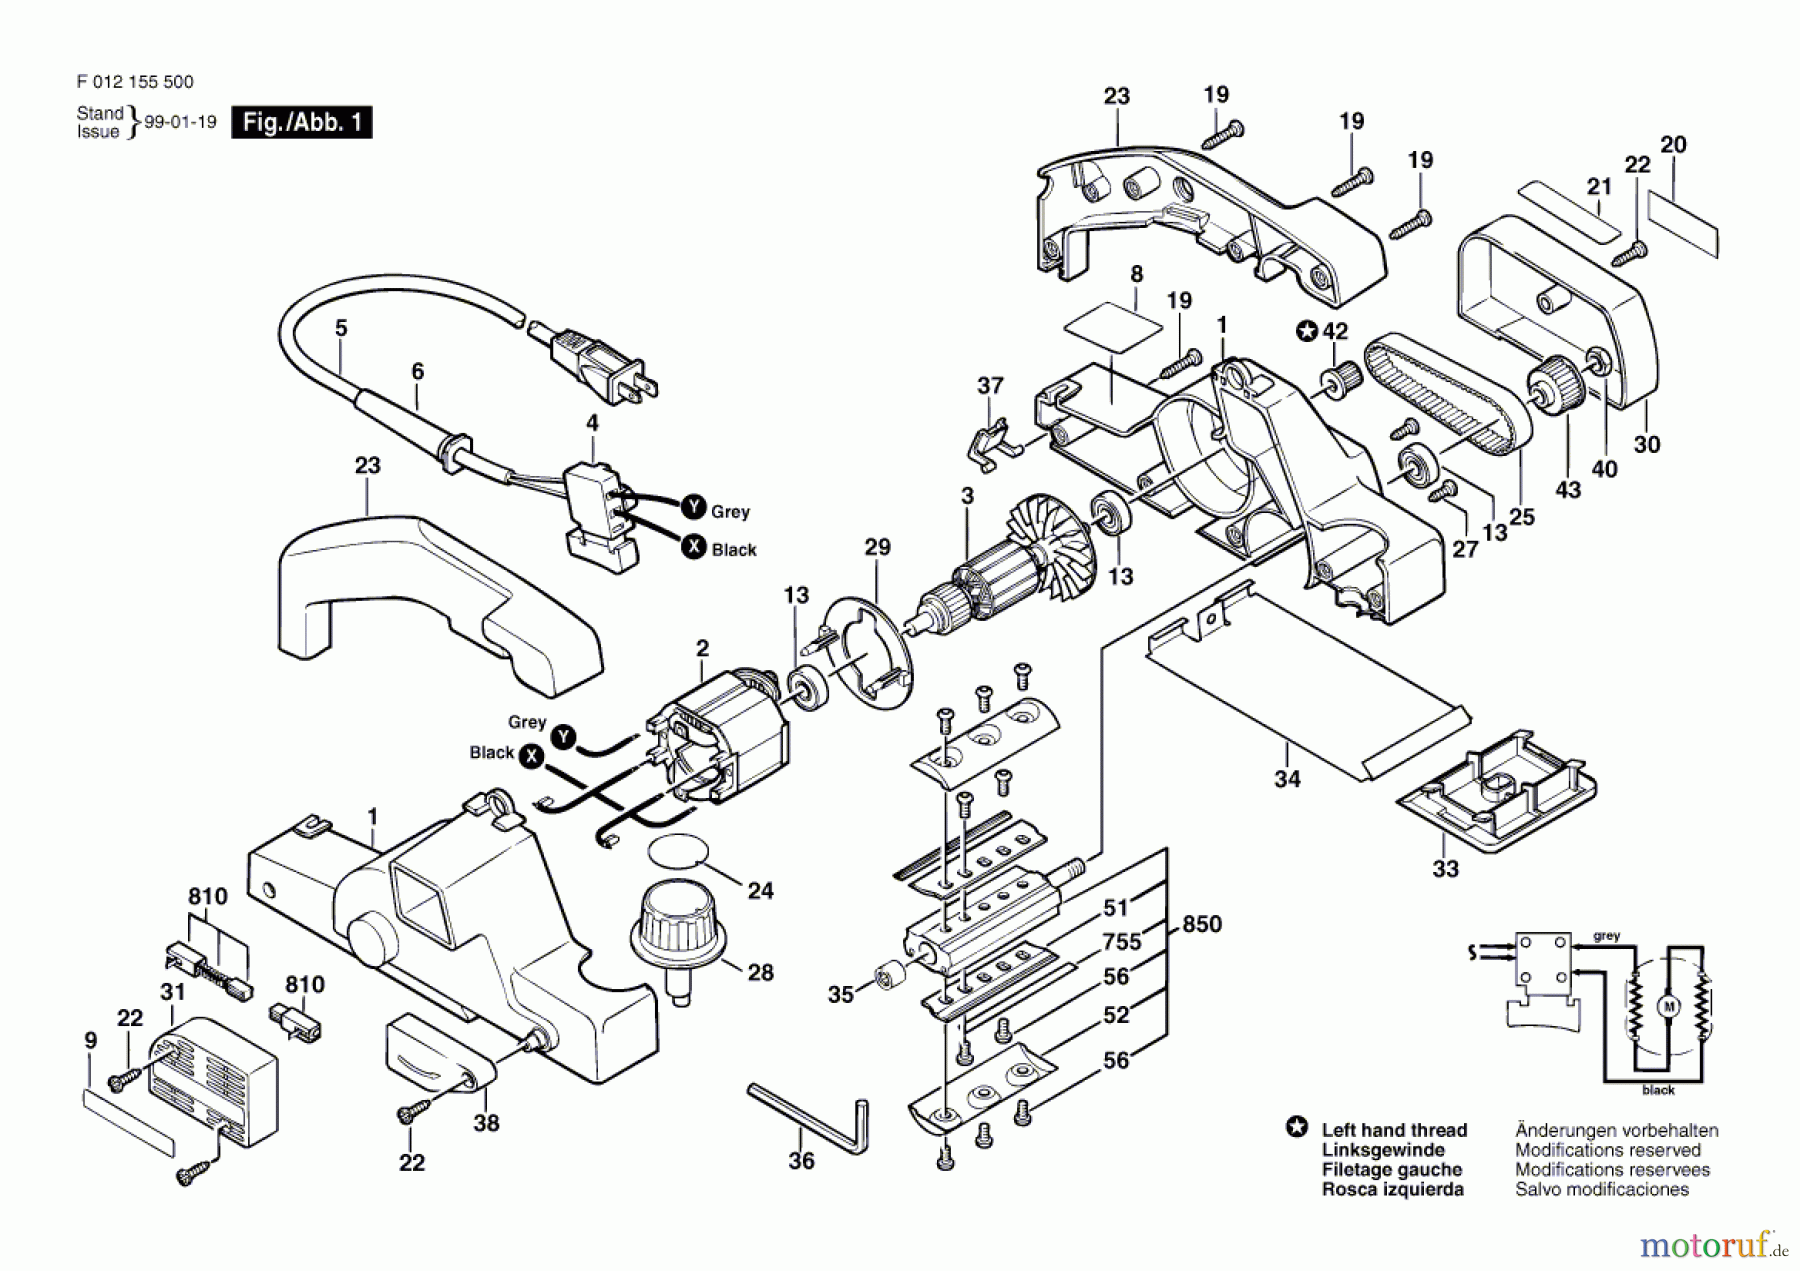  Bosch Werkzeug Handhobel 1555 Seite 1